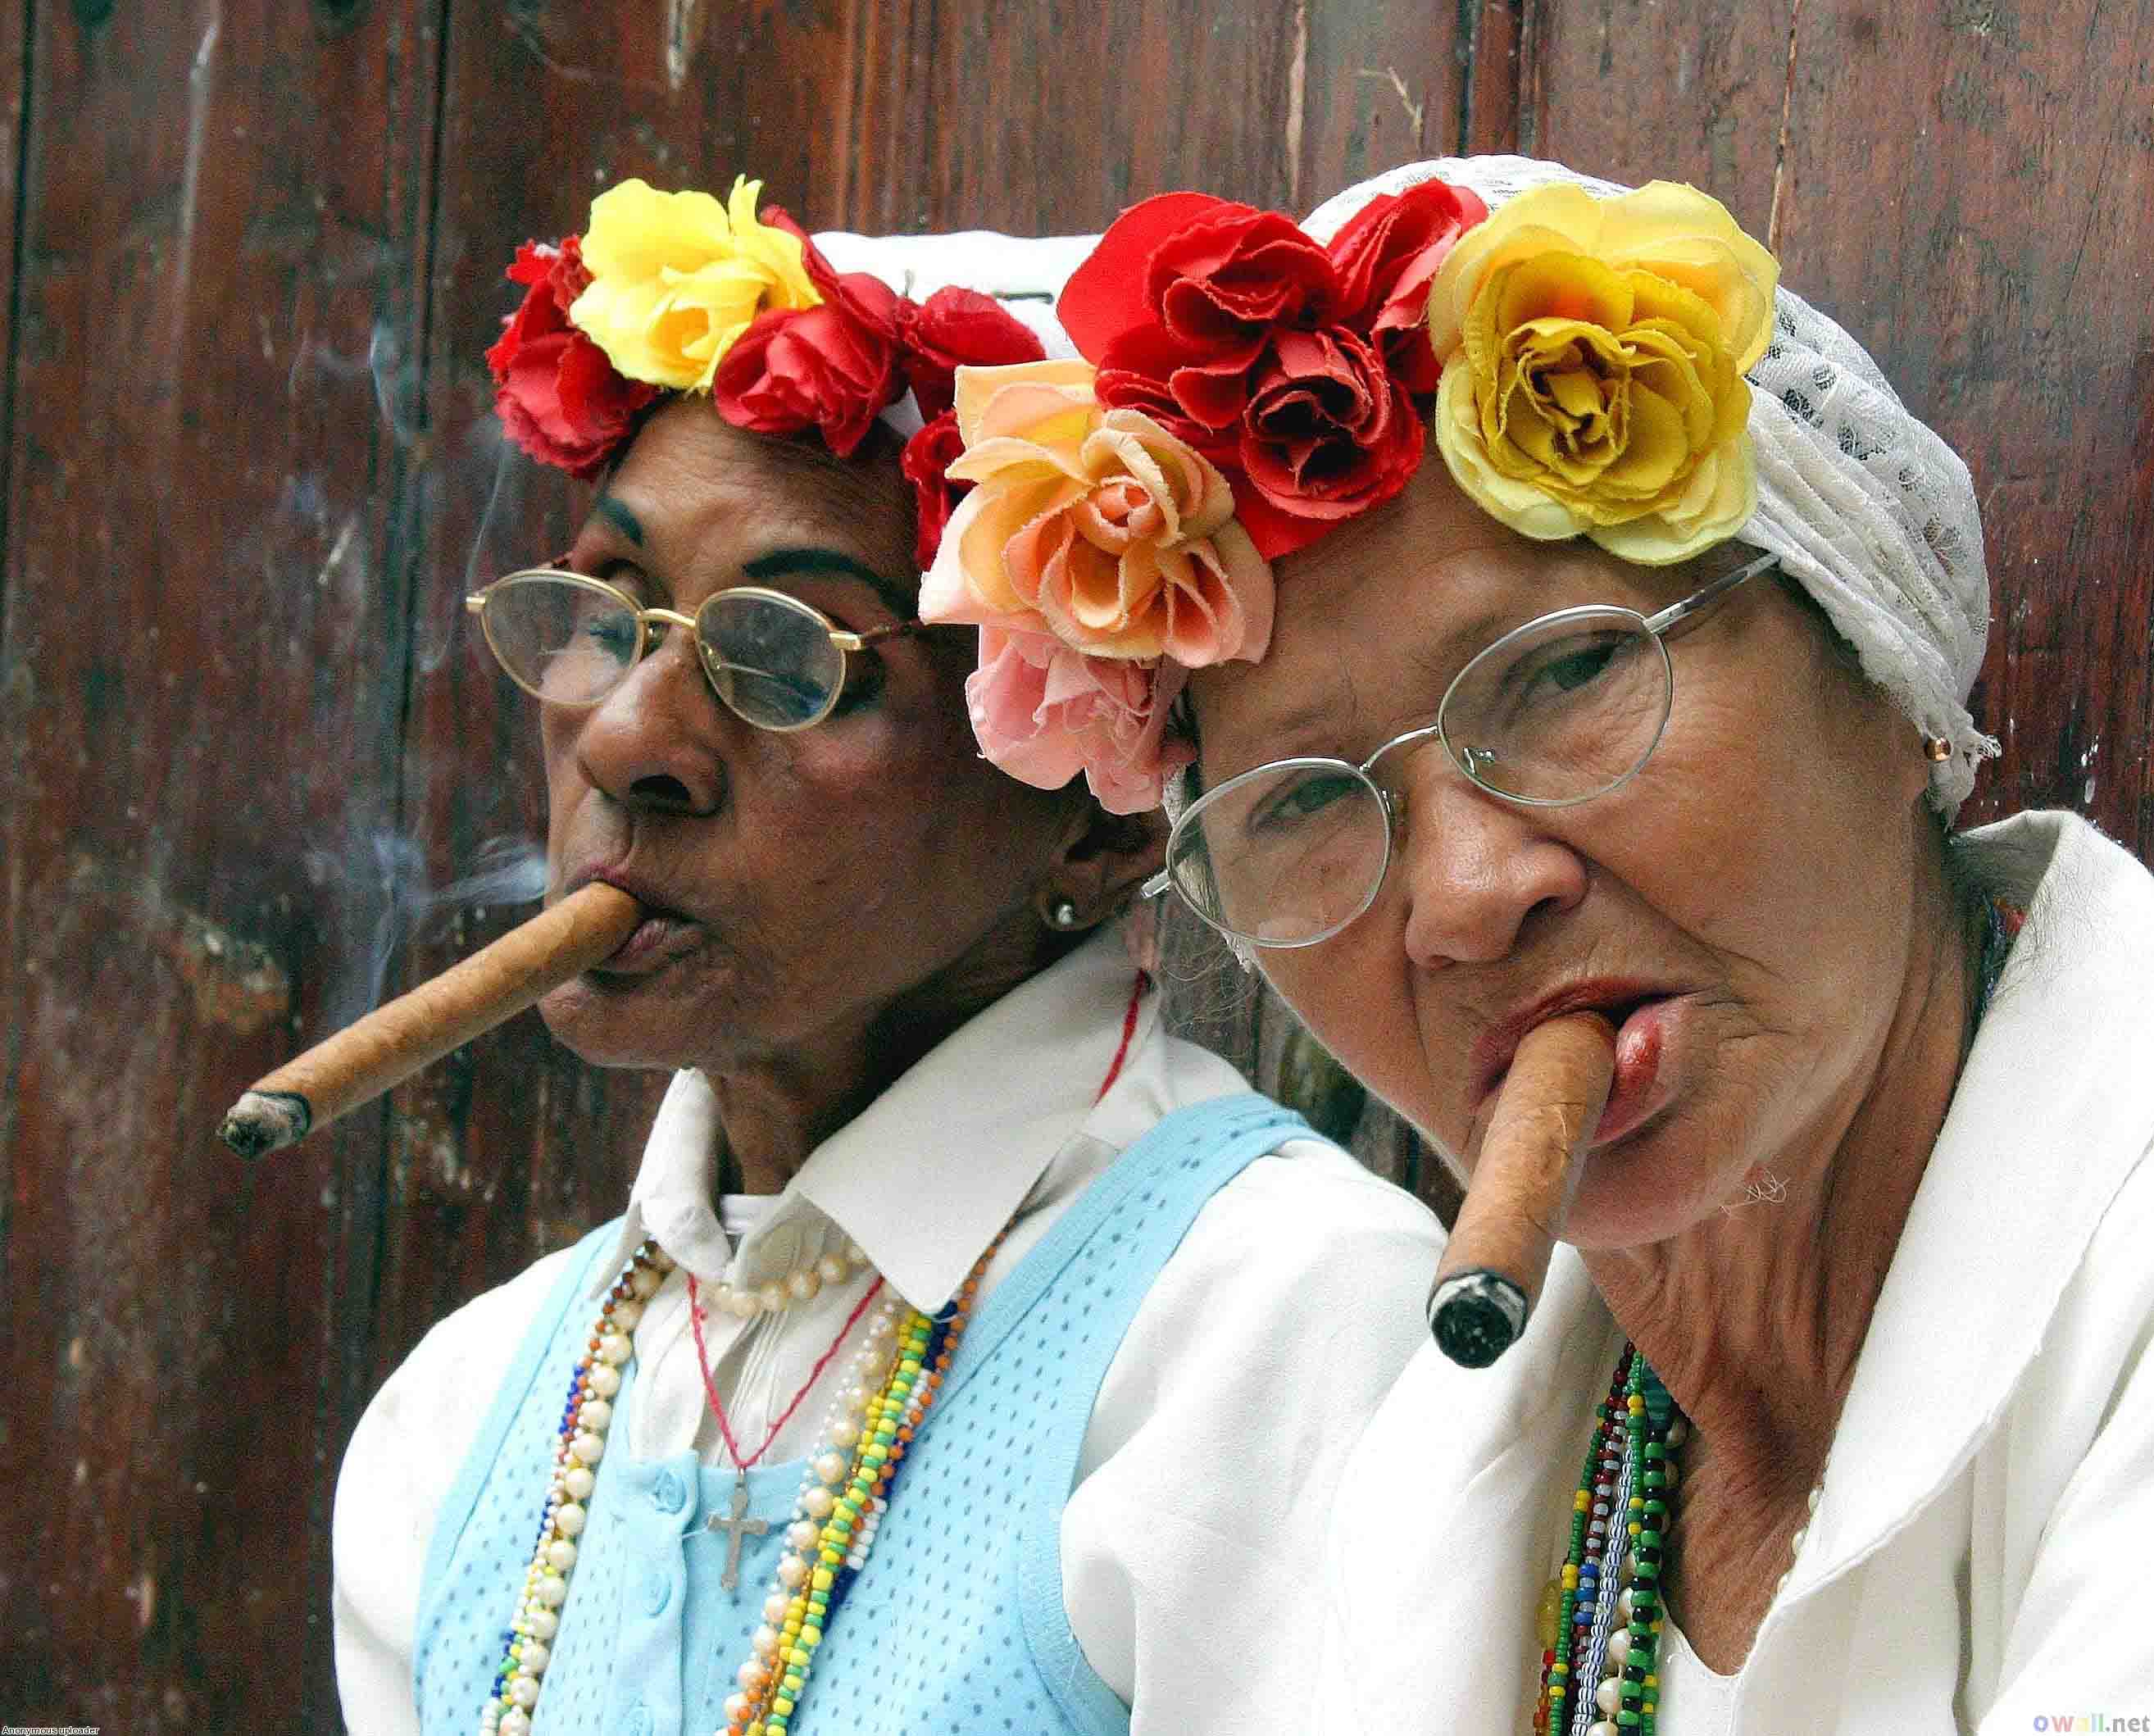 Cuban cigar smokers